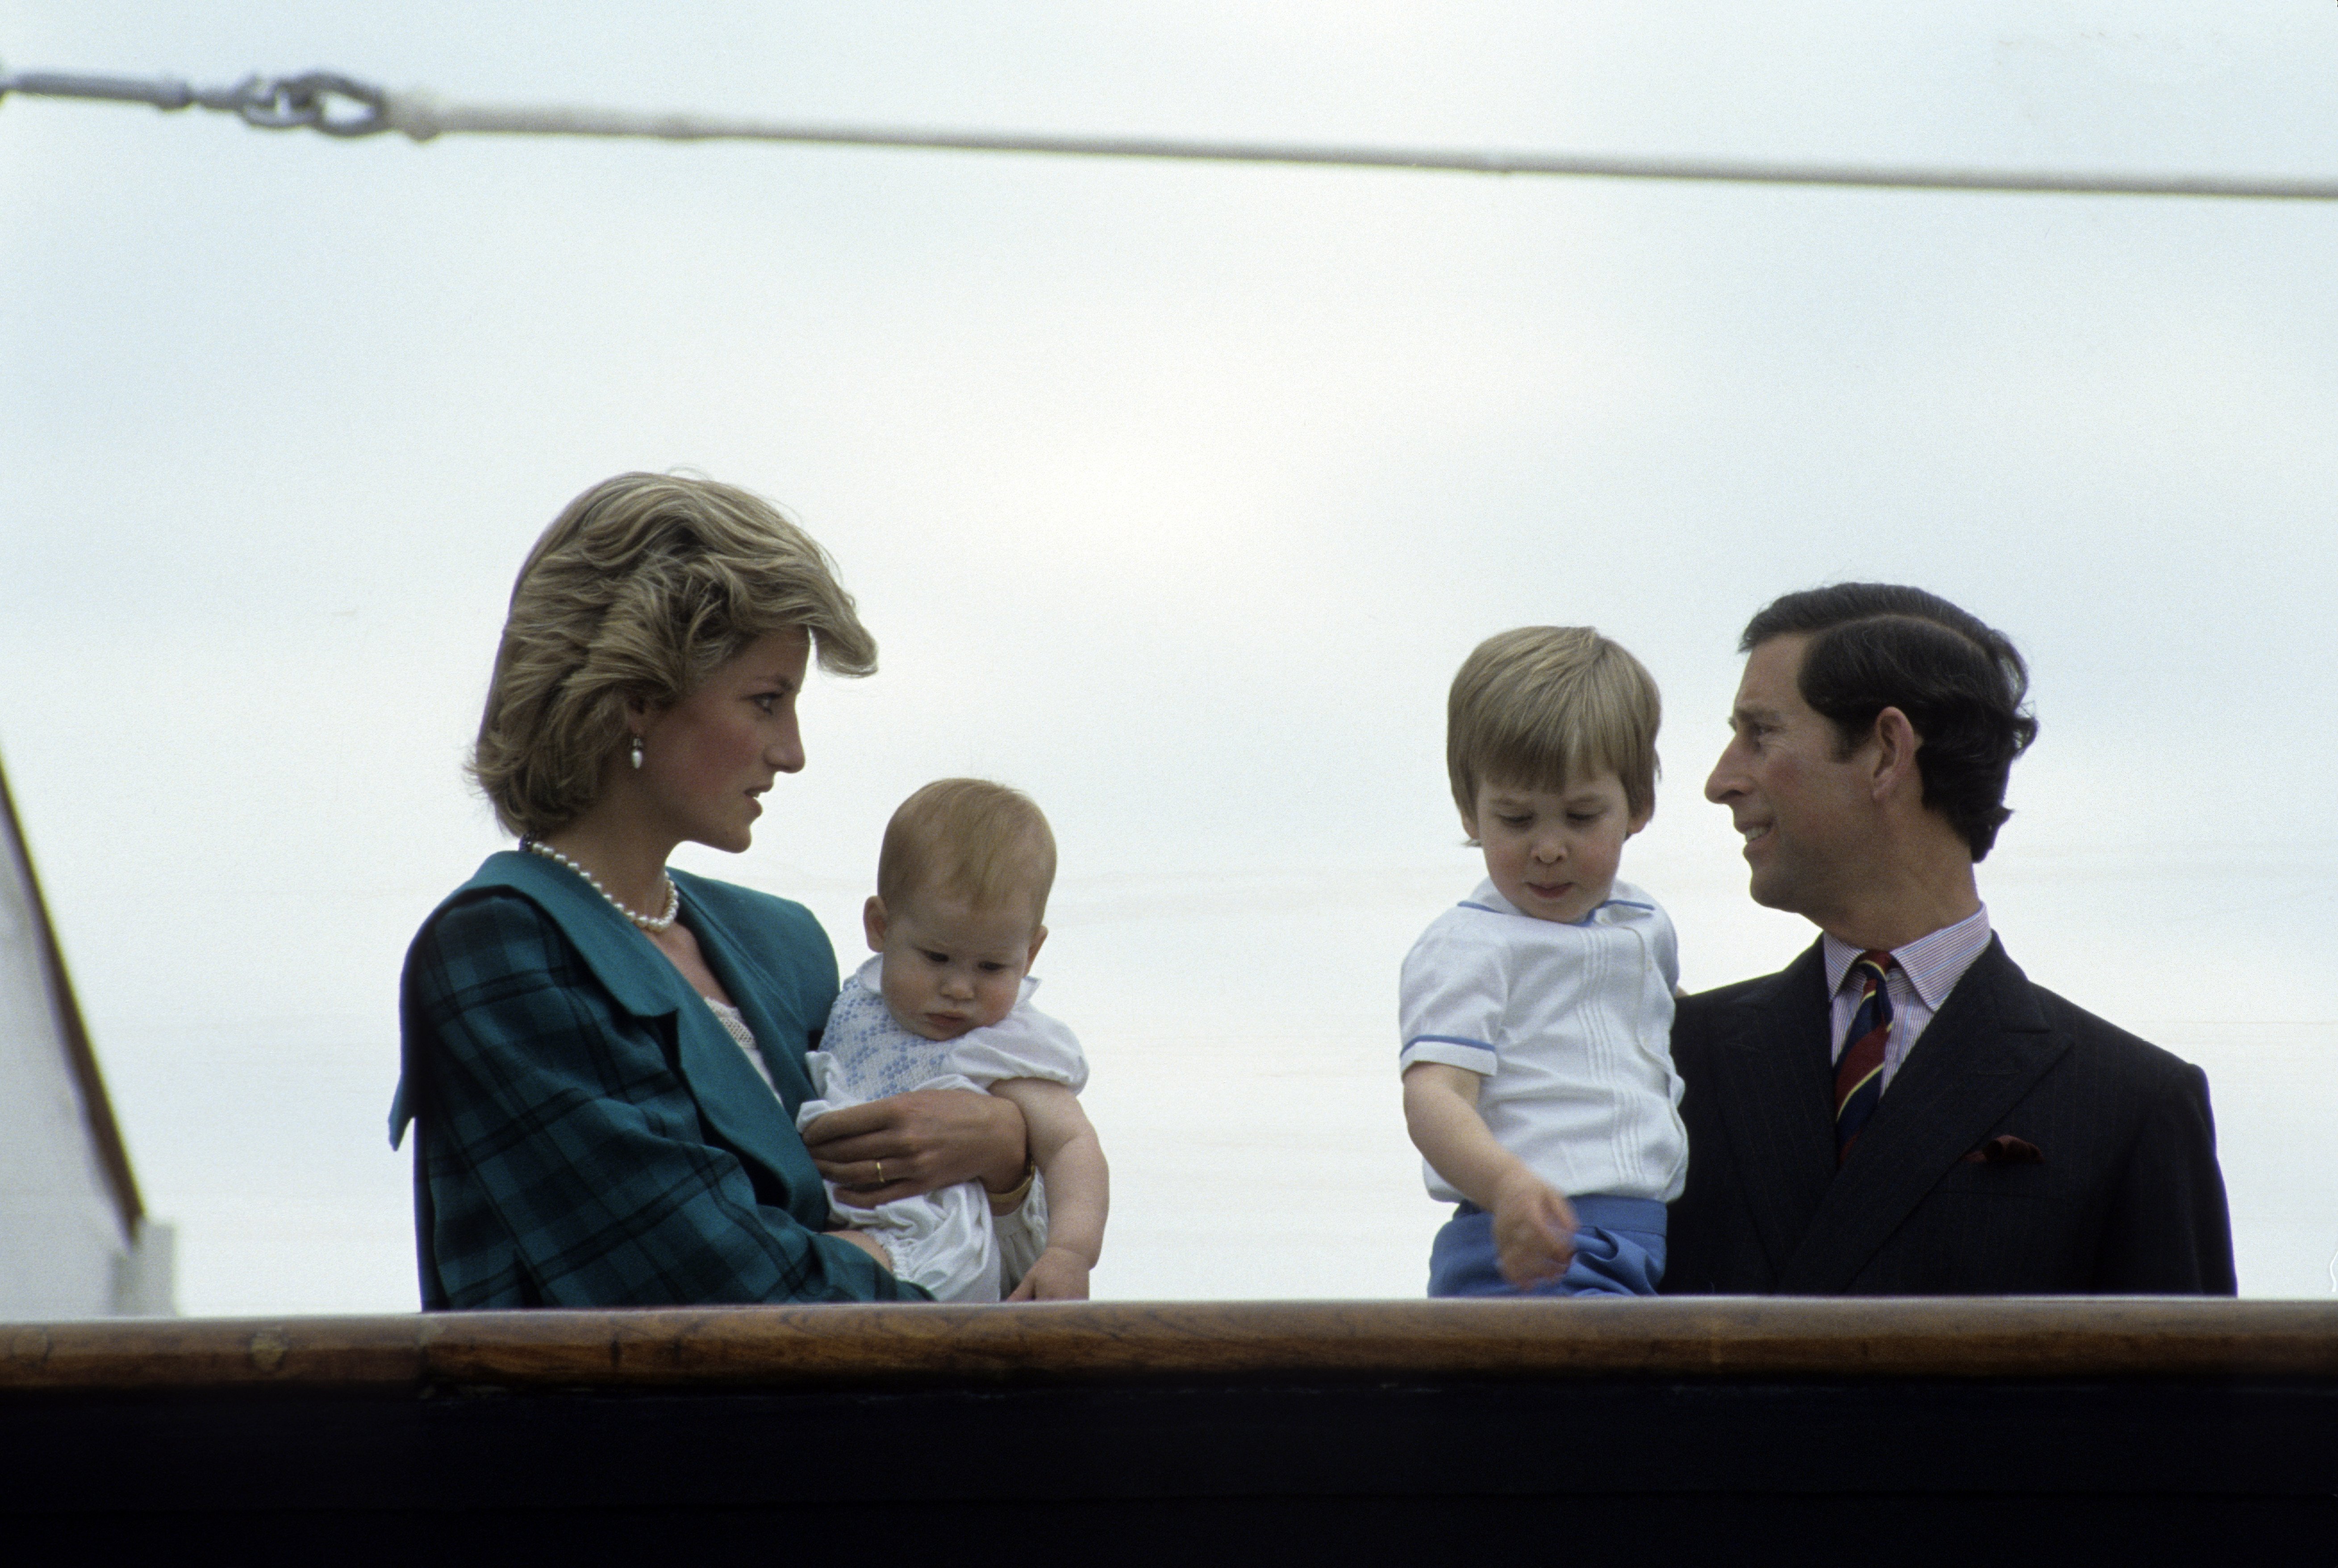 Príncipe Charles, Princesa Diana y sus hijos, el Príncipe William y el Príncipe Harry miran desde la cubierta del Royal Yacht Britannia el 05 de mayo de 1985 en Venecia, Italia.   | Foto: Getty Images.